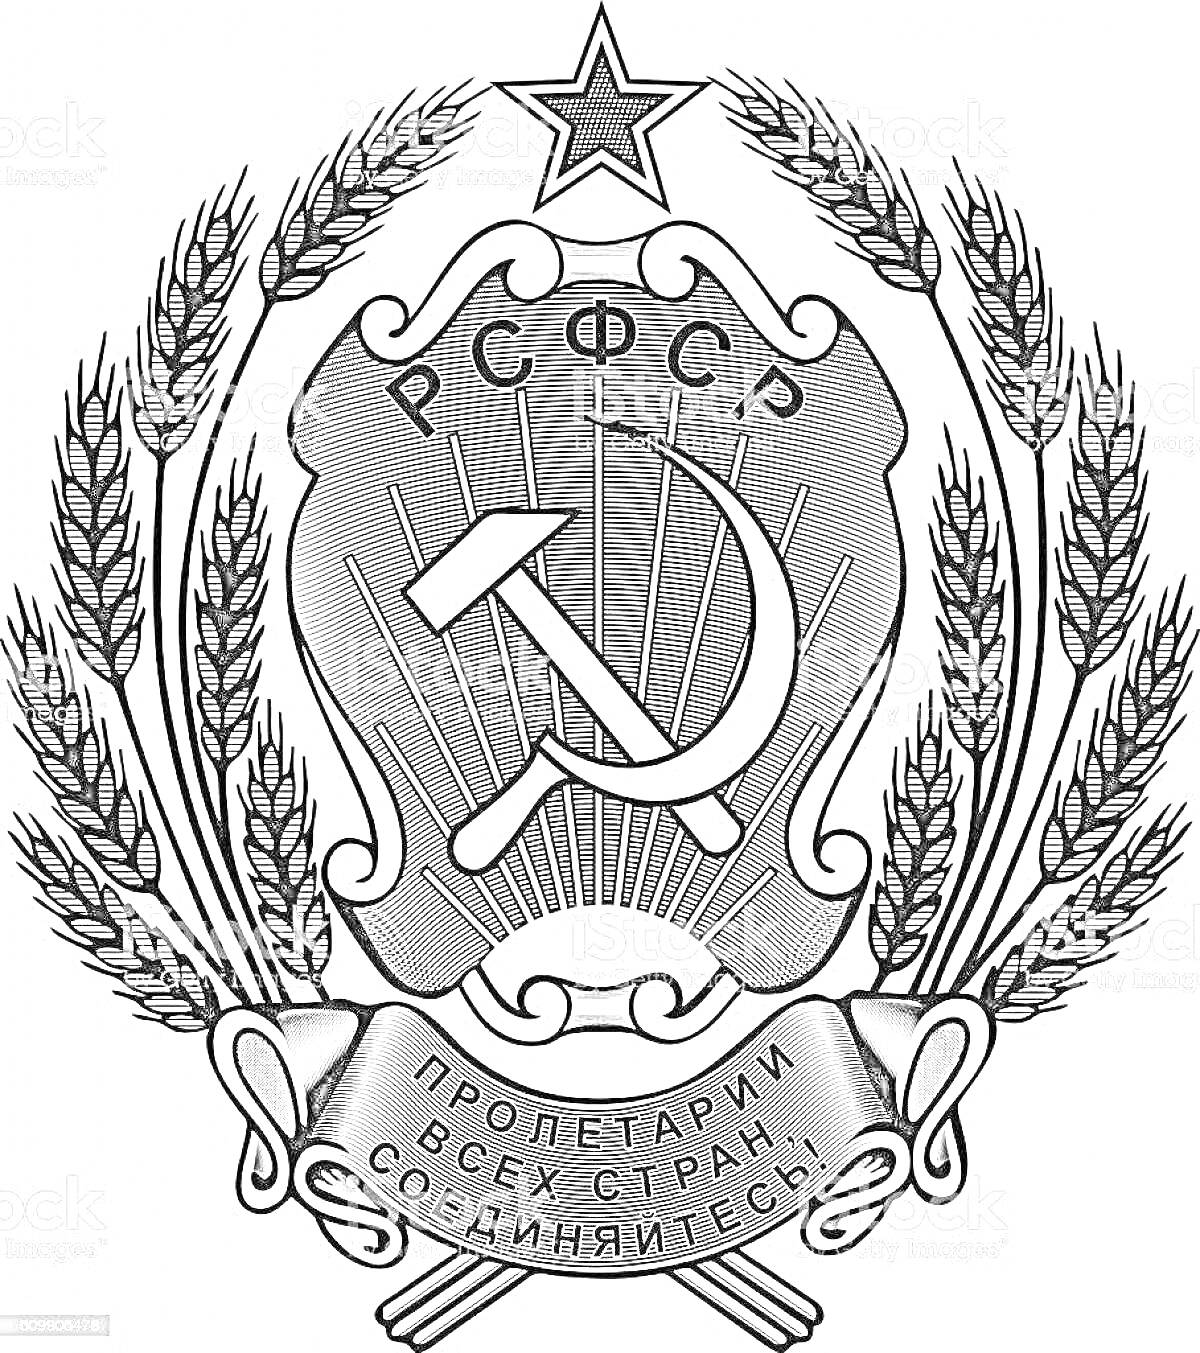 Раскраска Герб РСФСР с серпом и молотом, пятиконечной звездой, серпом пшеницы и ленточкой с лозунгом 